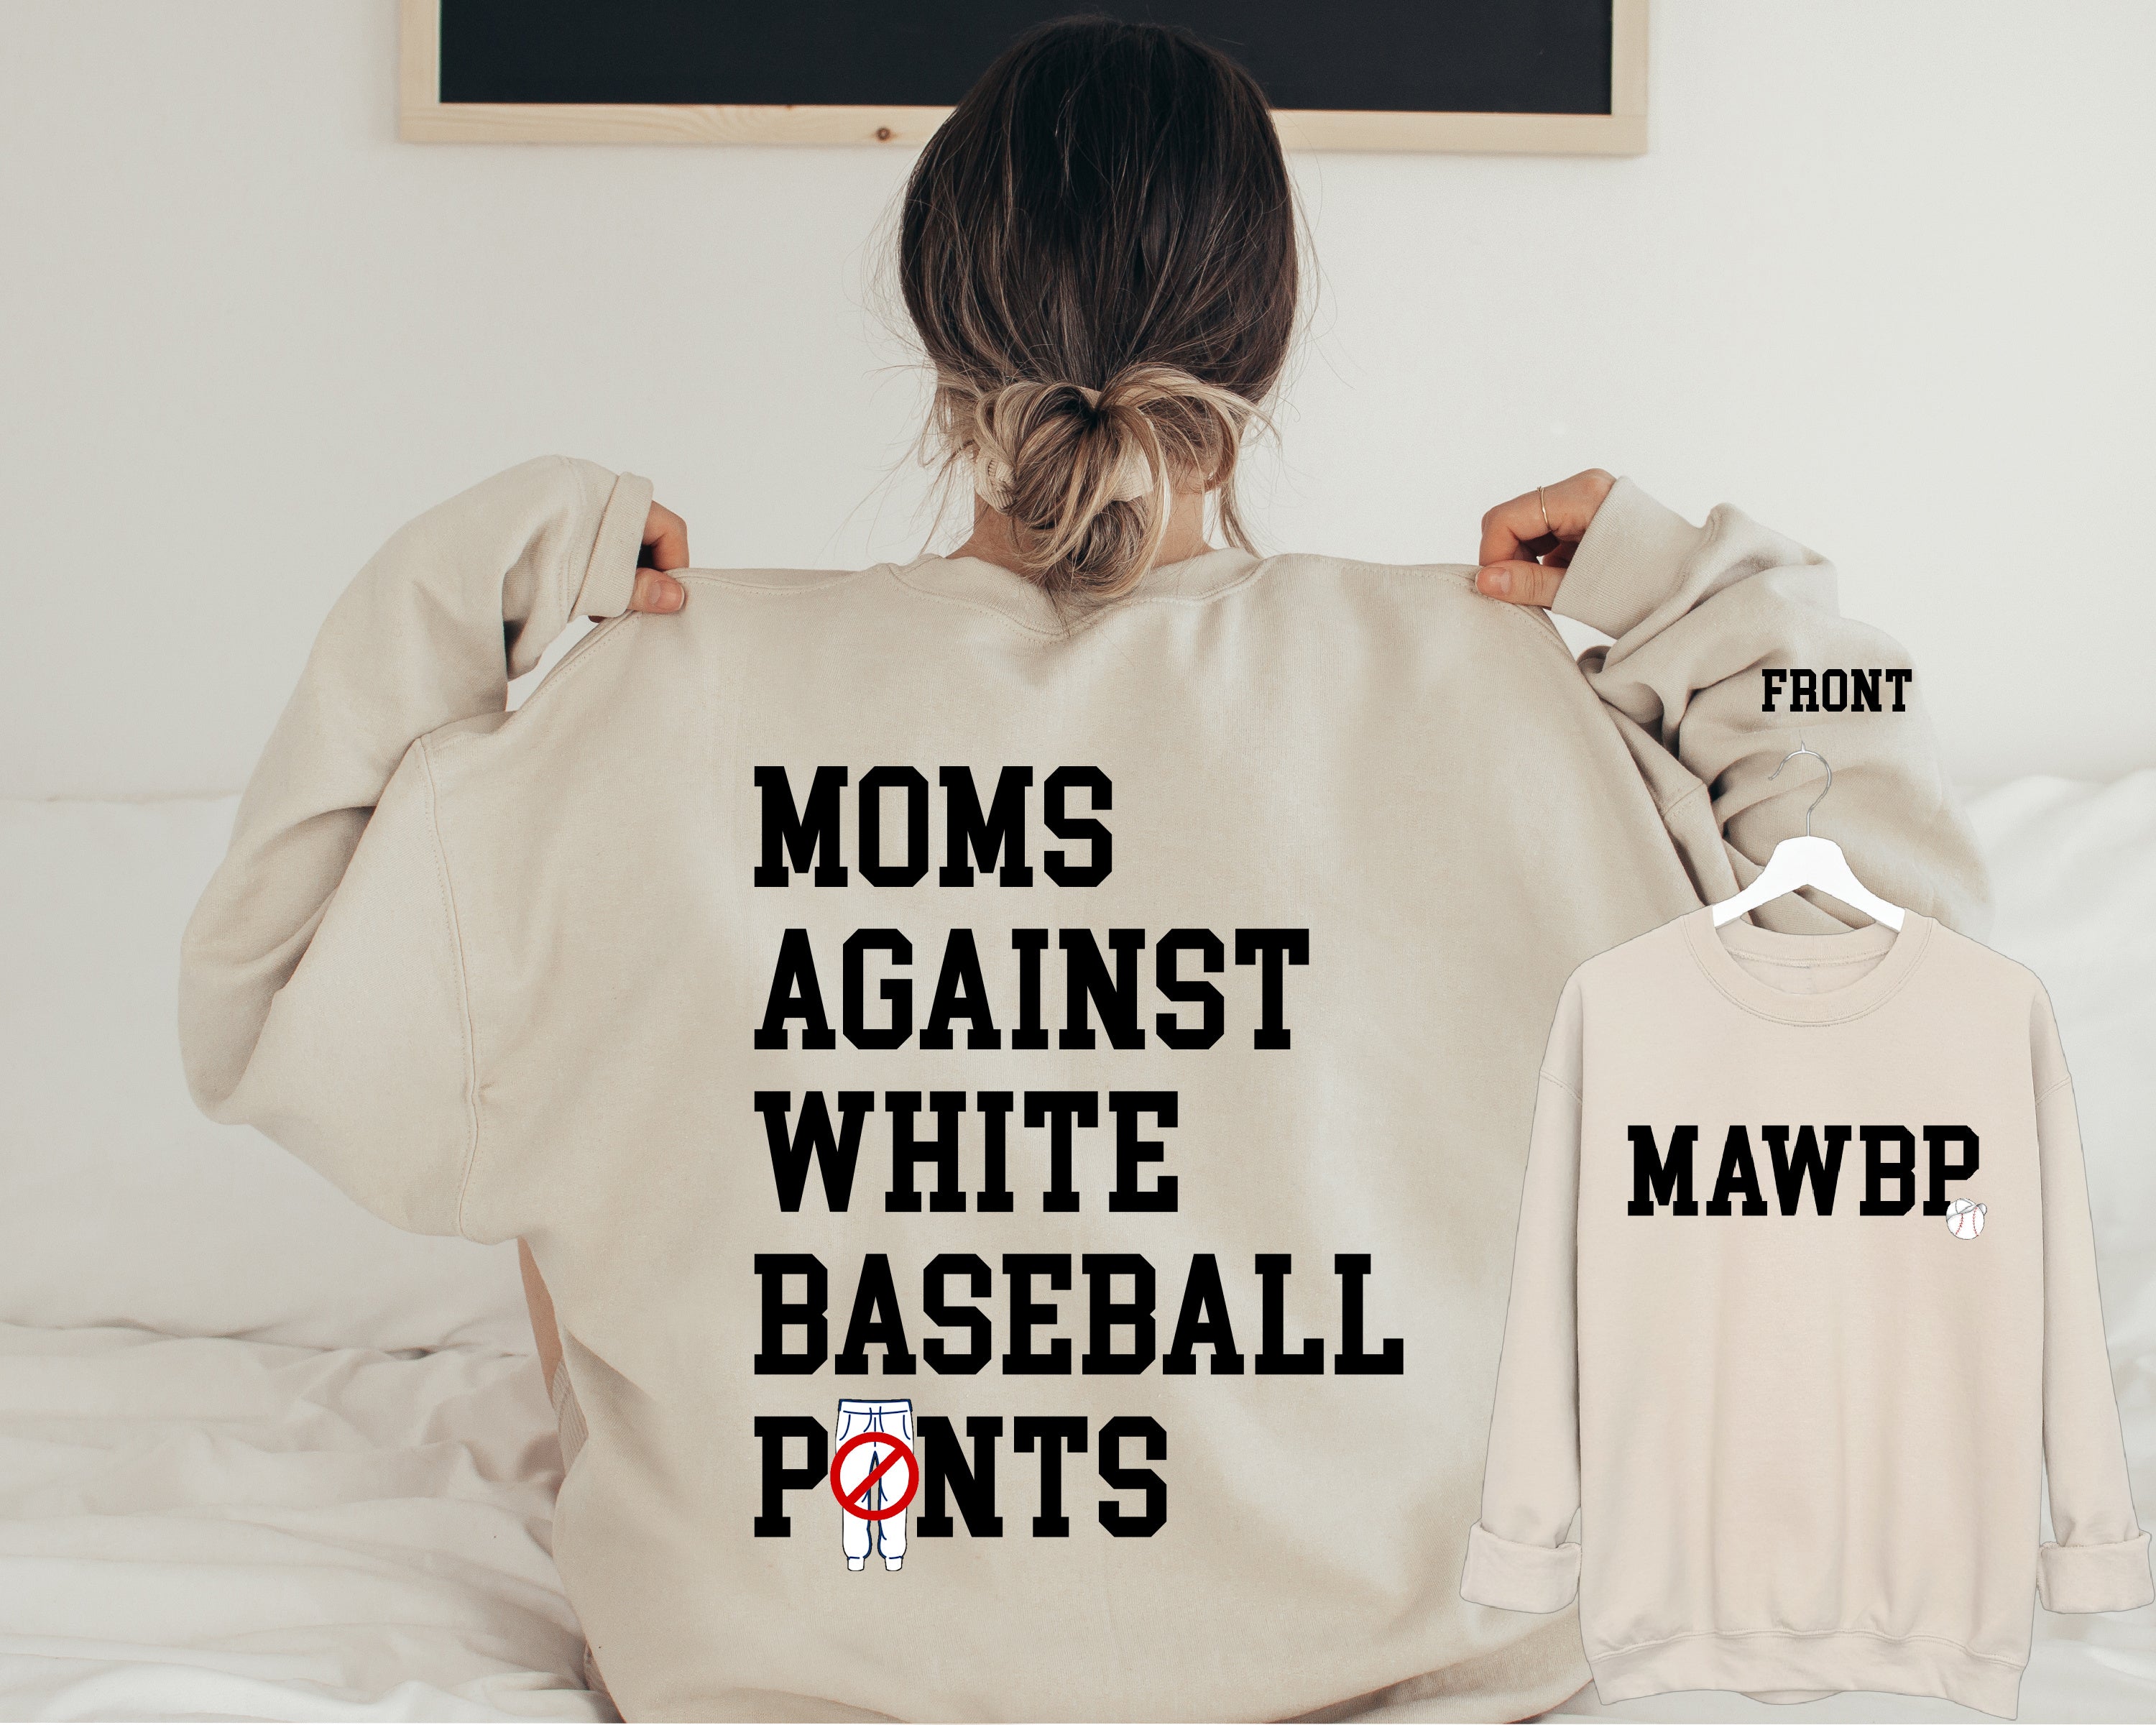 Baseball Memes for Baseball Moms - That Baseball Mom